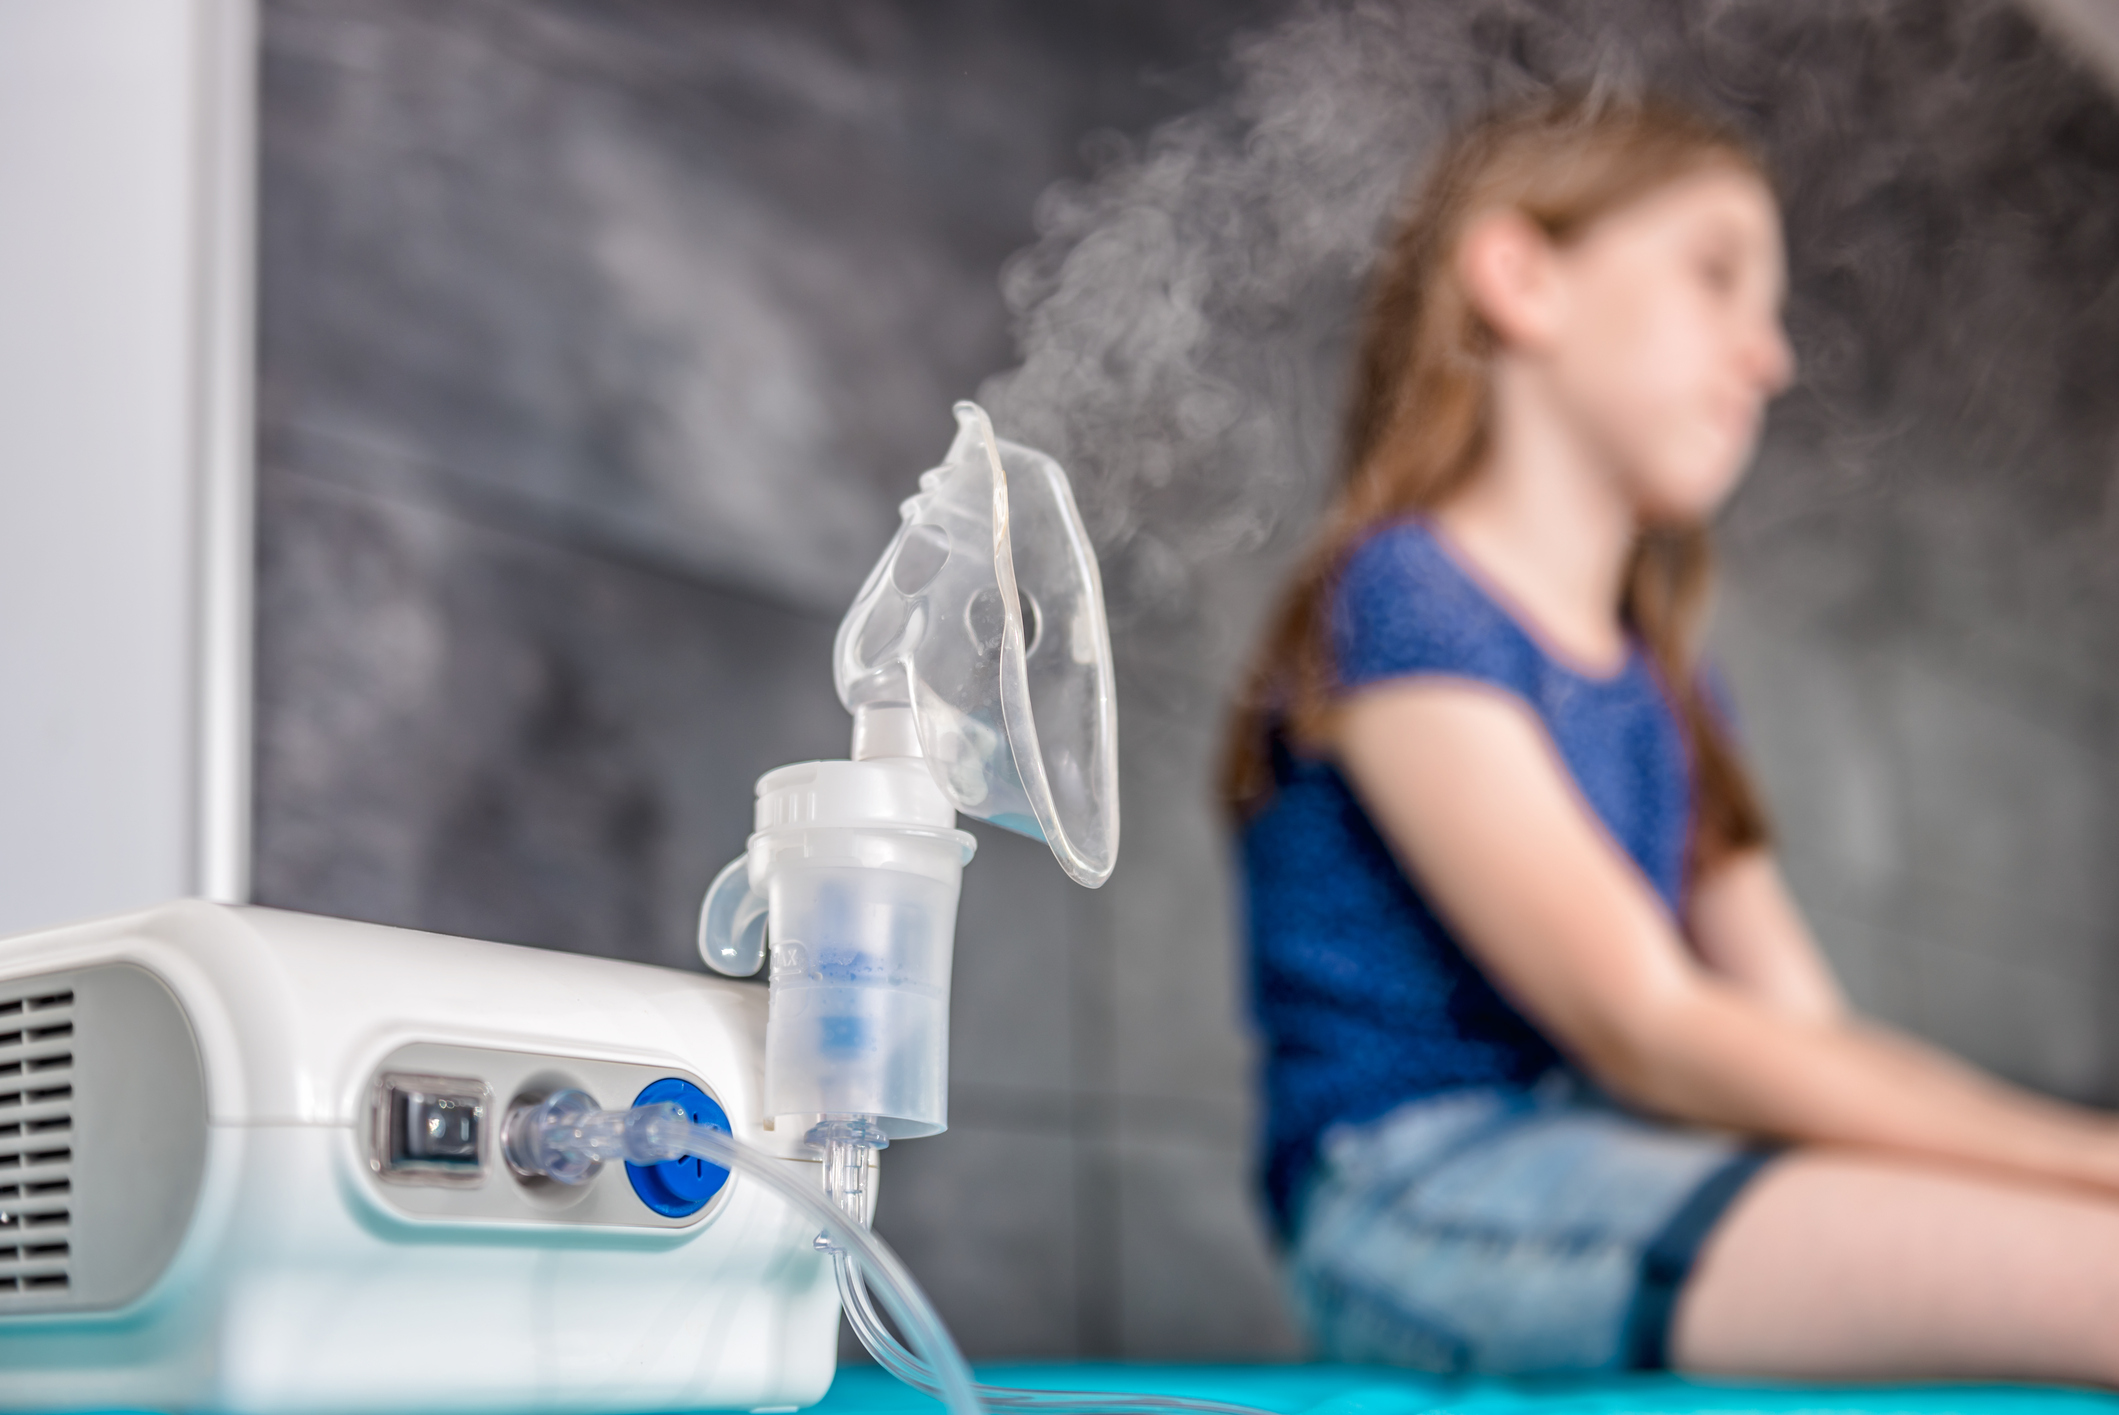 Nebulizador, aliado en el manejo de las respiratorias. En su buen uso está clave - Ser Saludables